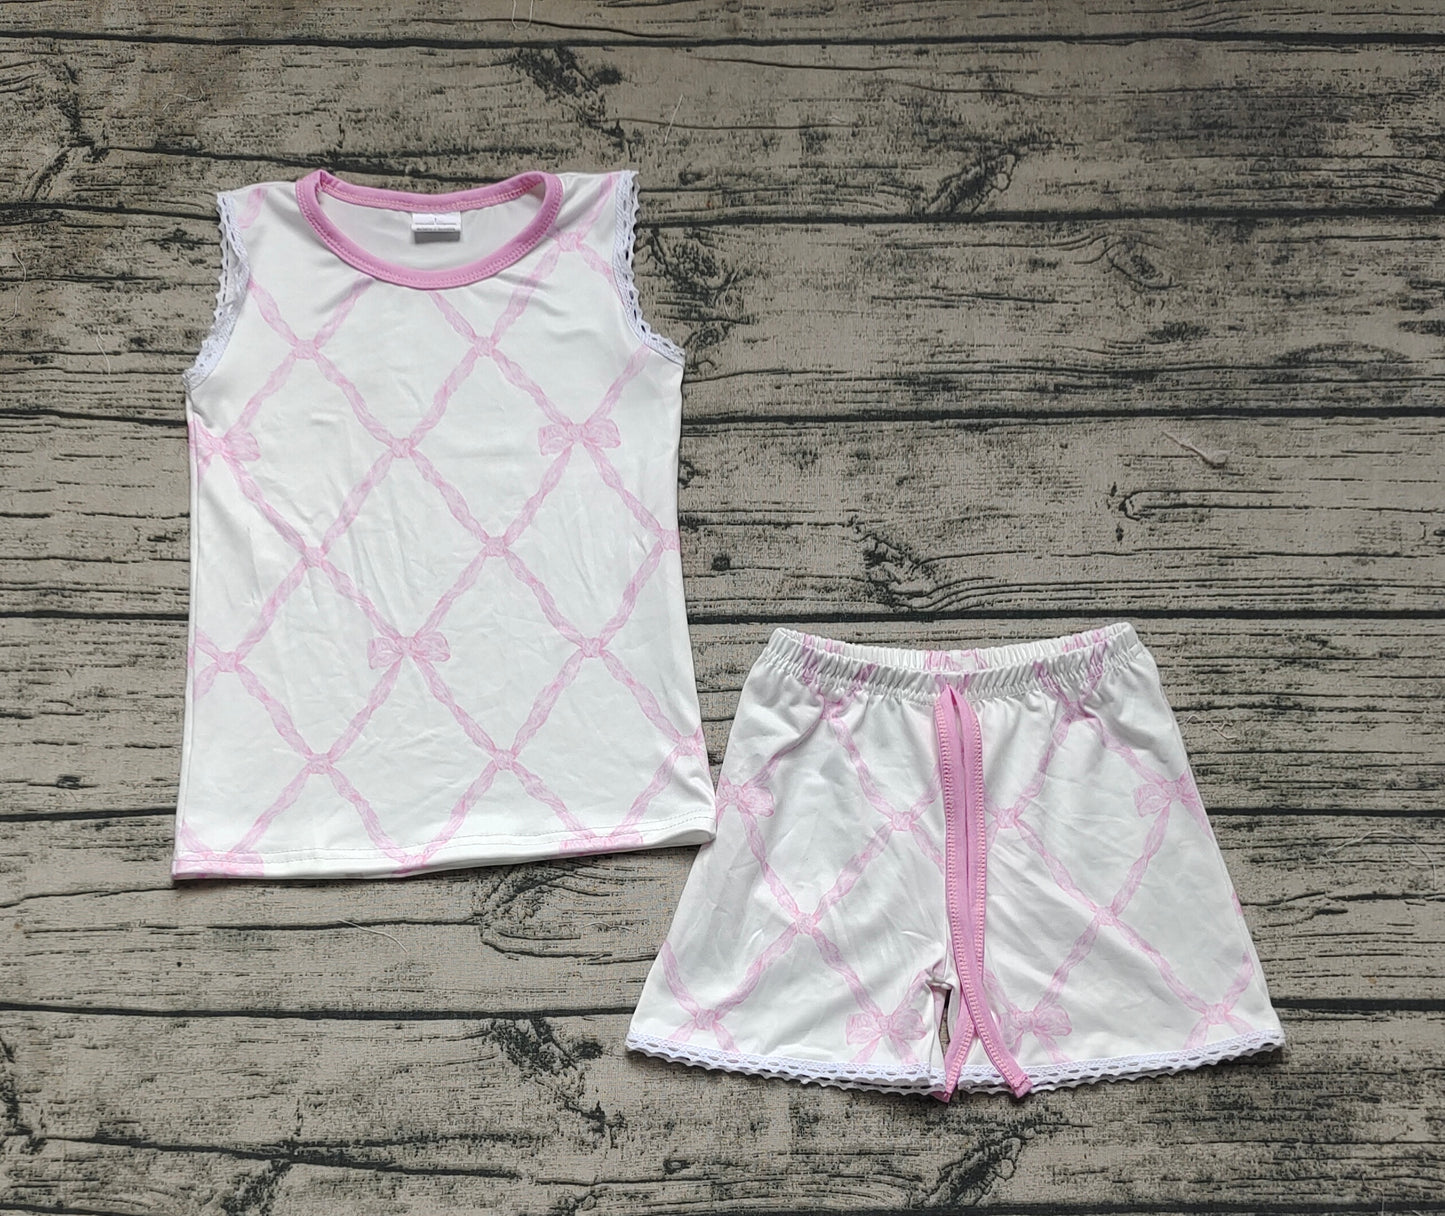 Baby Girls Bamboo Pink Bows Shirt Ruffle Shorts Clothes Sets Preorder